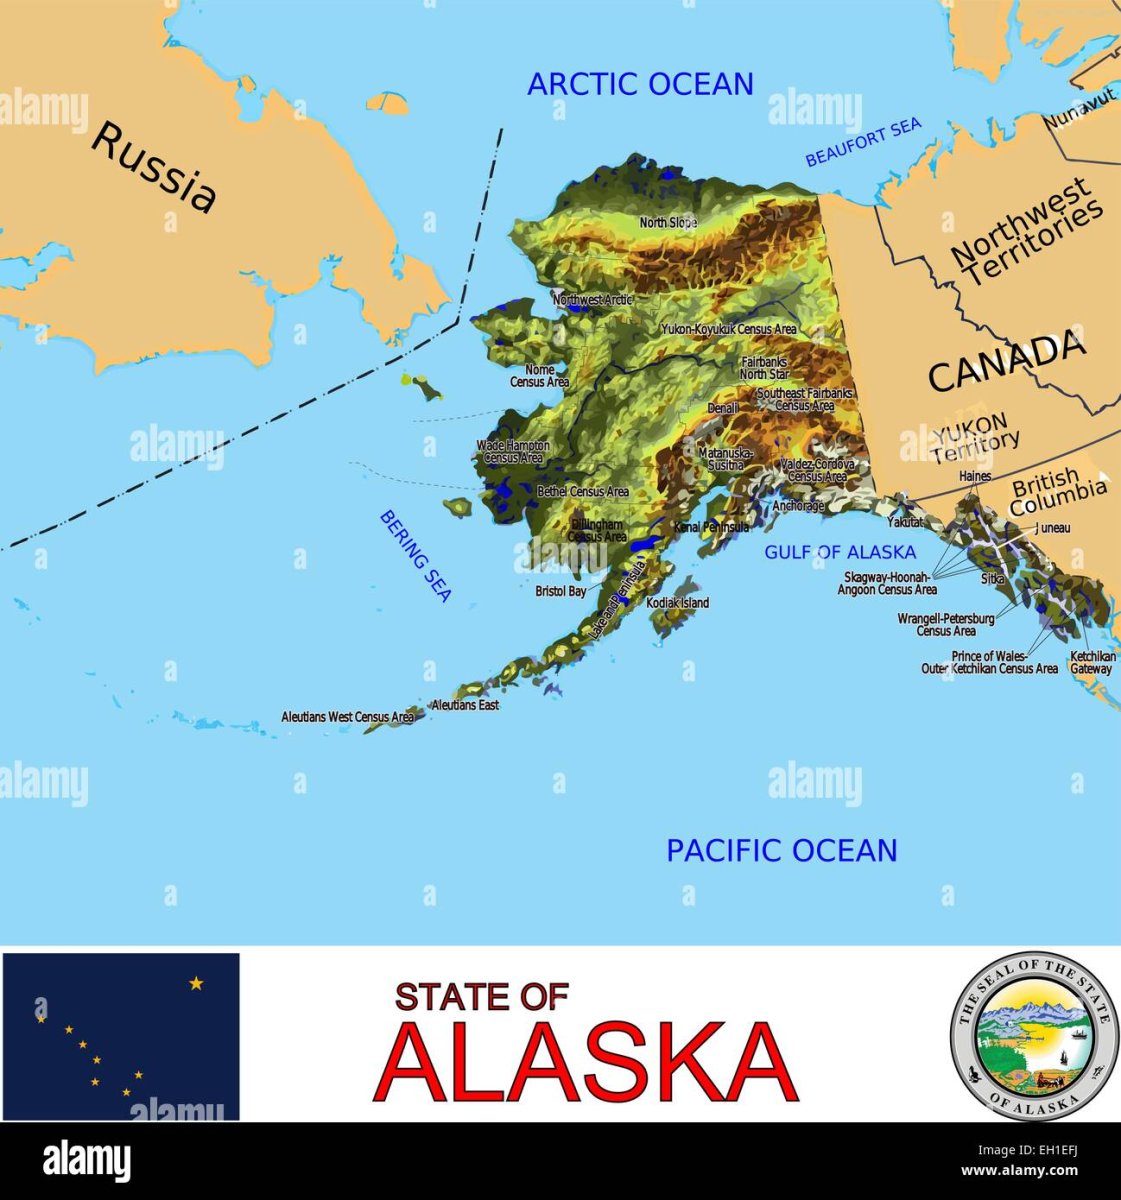 Где полуостров аляска. Полуостров Аляска. Залив Аляска на карте. Полуостров Аляска на карте. Карта Аляски подробная.